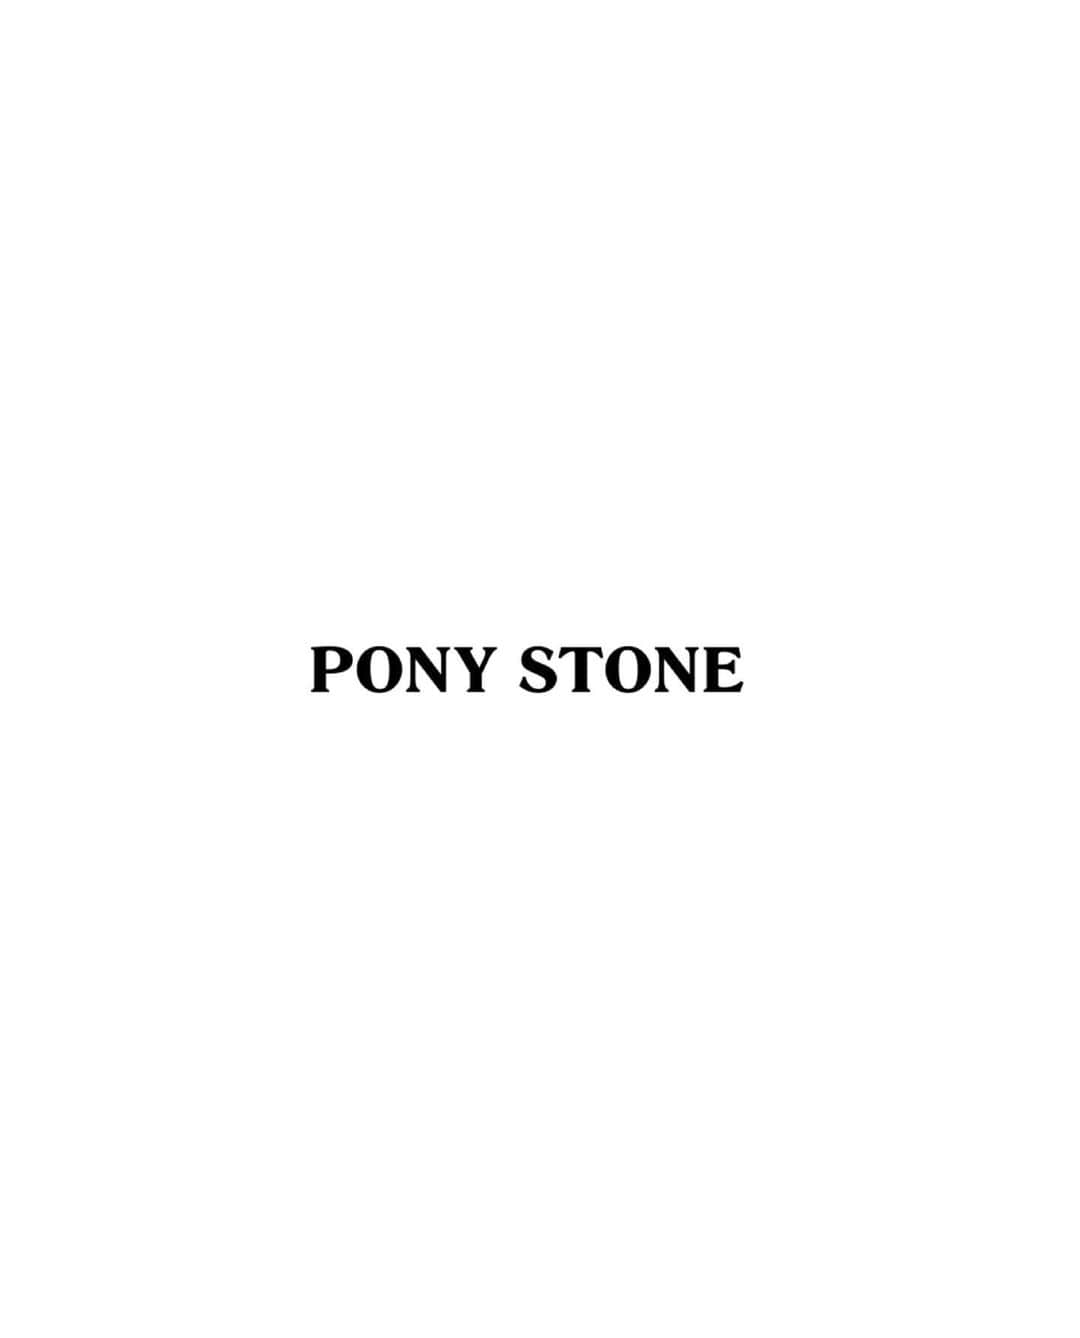 PONY STONEさんのインスタグラム写真 - (PONY STONEInstagram)「𝐏𝐎𝐍𝐘 𝐒𝐓𝐎𝐍𝐄 𝐒𝐀𝐅𝐄𝐓𝐘 𝐅𝐋𝐈𝐑𝐓 𝐊𝐈𝐓 🖤 1 𝐍𝐀𝐈𝐕𝐄 𝐟𝐚𝐜𝐞 𝐬𝐡𝐢𝐞𝐥𝐝 680 𝐭𝐡𝐛 หน้ากากอนามัย FACE SHIELD รูปหัวใจ(สีดำ/สีแดง) ขนาด Face shield length : 8” / width : 10” 2 𝐏𝐔𝐑𝐄 𝐟𝐚𝐜𝐞 𝗺𝐚𝐬𝐤 280 𝐭𝐡𝐛 หน้ากากอนามัยผ้านีโอพรีน สกรีนโลโก้ PONY STONE พร้อมสายคล้องคอ ขนาด Width : 26 cm. / High : 8.5 cm. 3 𝐁𝐔𝐋𝐋𝐄𝐓  𝐩𝐮𝐬𝐡 𝐬𝐭𝐢𝐜𝐤 680 𝐭𝐡𝐛 อุปกรณ์กดปุ่มอนามัย สำหรับพกพา แข็งแรงและทนทาน ช่วยลดความเสี่ยงต่อการสัมผัสเชื้อโรคได้และสามารถเป็นไฟแช็ก / ไฟฉาย  4 𝐏𝐑𝐈𝐎𝐑𝐈𝐓𝐘 𝐟𝐚𝐜𝐞 𝐜𝗼𝐯𝐞𝐫 𝐭𝐞𝐞 1680 𝐭𝐡𝐛 เสื้อยืดแขนสั้นคอMASKสามารถใส่ปิดขึ้นมาบริเวณใบหน้าได้ ผ้านุ่มใส่สบาย และมีช่องใส่ขวดสเปรย์แอลกอฮอล์ด้วย 5 𝐅𝐋𝐈𝐑𝐓 𝐭𝗼𝐭𝐞 𝐛𝐚𝐠 680𝐭𝐡𝐛 กระเป๋าผ้าสำหรับใส่อุปกรณ์ที่ป้องกันเชื้อโรค เชื้อไวรัส ที่สะพายออกจากบ้านได้อย่างมั่นใจ และมีช่องแบ่งใส่ของ 3 ช่องด้วย 6 𝐊𝐈𝐓𝐙 𝐠𝐥𝗼𝐯𝐞 𝐛𝗼𝐱/ 3 𝐛𝐥𝐚𝐜𝐤 𝐫𝐮𝐛𝐛𝐞𝐫  𝐠𝐥𝗼𝐯𝐞𝐬 480 𝐭𝐡𝐛 กล่องใส่ถุงมือยางอนามัย กล่องที่ใส่ถุงมือยางที่พกออกจากบ้านได้โดยหยิบมาใช้ในการสัมผัสสิ่งของโดยตรง ลดการสัมผัสเชื้อโรค 1 กล่องมีถุงมือให้ 3 ชิ้น 7 𝐒𝐏𝐑𝐄𝐀𝐃𝐈𝐍𝐆 𝐋𝐎𝐕𝐄 3 𝐛𝗼𝐭𝐭𝐥𝐞𝐬 𝐚𝐥𝐜𝗼𝐡𝗼𝐥 𝐬𝐩𝐫𝐚𝐲 75% 320 𝐭𝐡𝐛 Spreading love 🤍 ALCOHOL HAND SPRAY 🤍 มีส่วนผสมแอลกอฮอล์ 75% Food grade ใช้ทำความสะอาดมือ และ สิ่งของต่างๆรอบตัว เพื่อ ฆ่าเชื้อโรค-ไวรัสได้ถึง99.99%  𝐈𝐍𝐃𝐈𝐕𝐈𝐃𝐔𝐀𝐋 4,880𝐭𝐡𝐛  มูลค้าสินค้ารวม 4,880 thb 𝐒𝐞𝐭 3,880𝐭𝐡𝐛  ราคาขายยกเซ็ต 3,880 thb สามารถซื้อแยกชิ้นได้  𝐀𝐕𝐀𝐈𝐋𝐀𝐁𝐋𝐄  @centralworld 𝐎𝐑 𝐎𝐑𝐃𝐄𝐄 𝐕𝐈𝐀 𝐋𝐈𝐍𝐄 @ponystone #ponystone」6月7日 19時25分 - ponystone_official